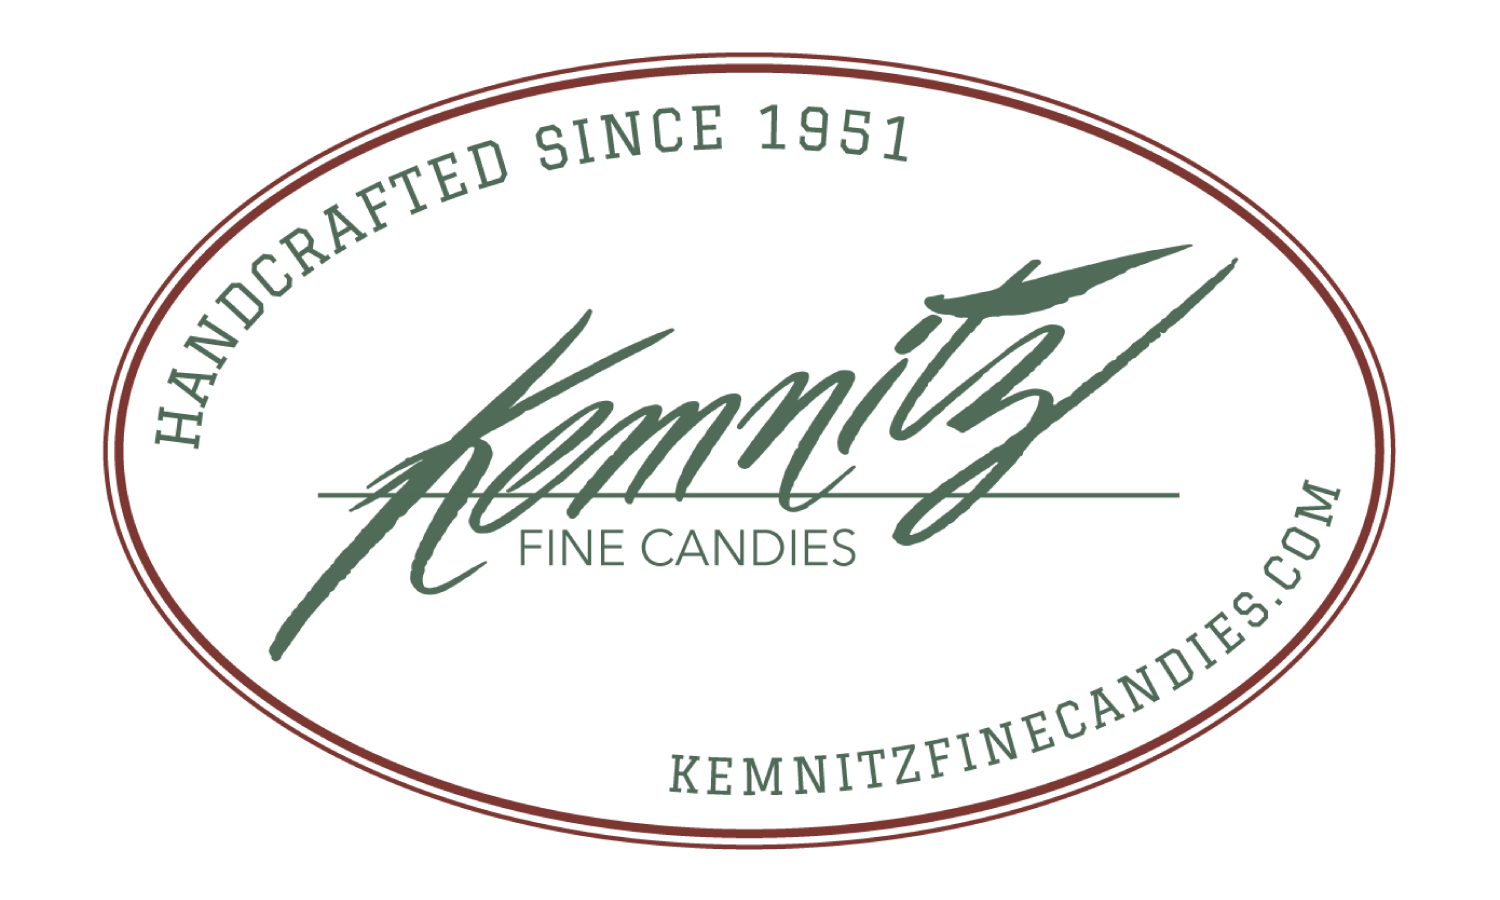 Kemnitz Fine Candies